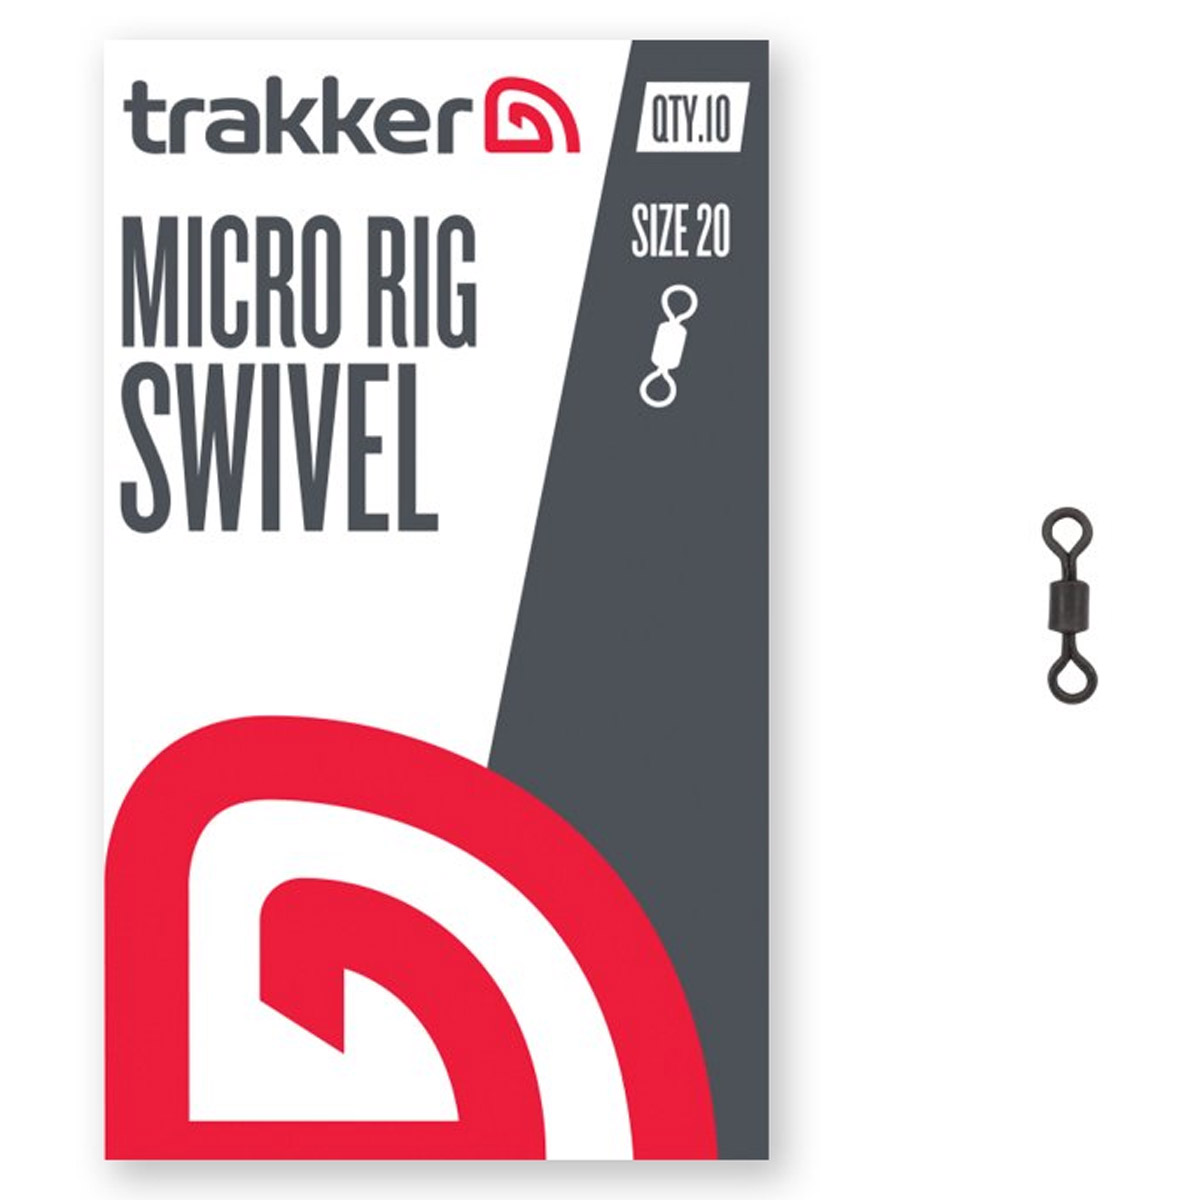 Trakker Trakker Micro Rig Swivel - Size 20